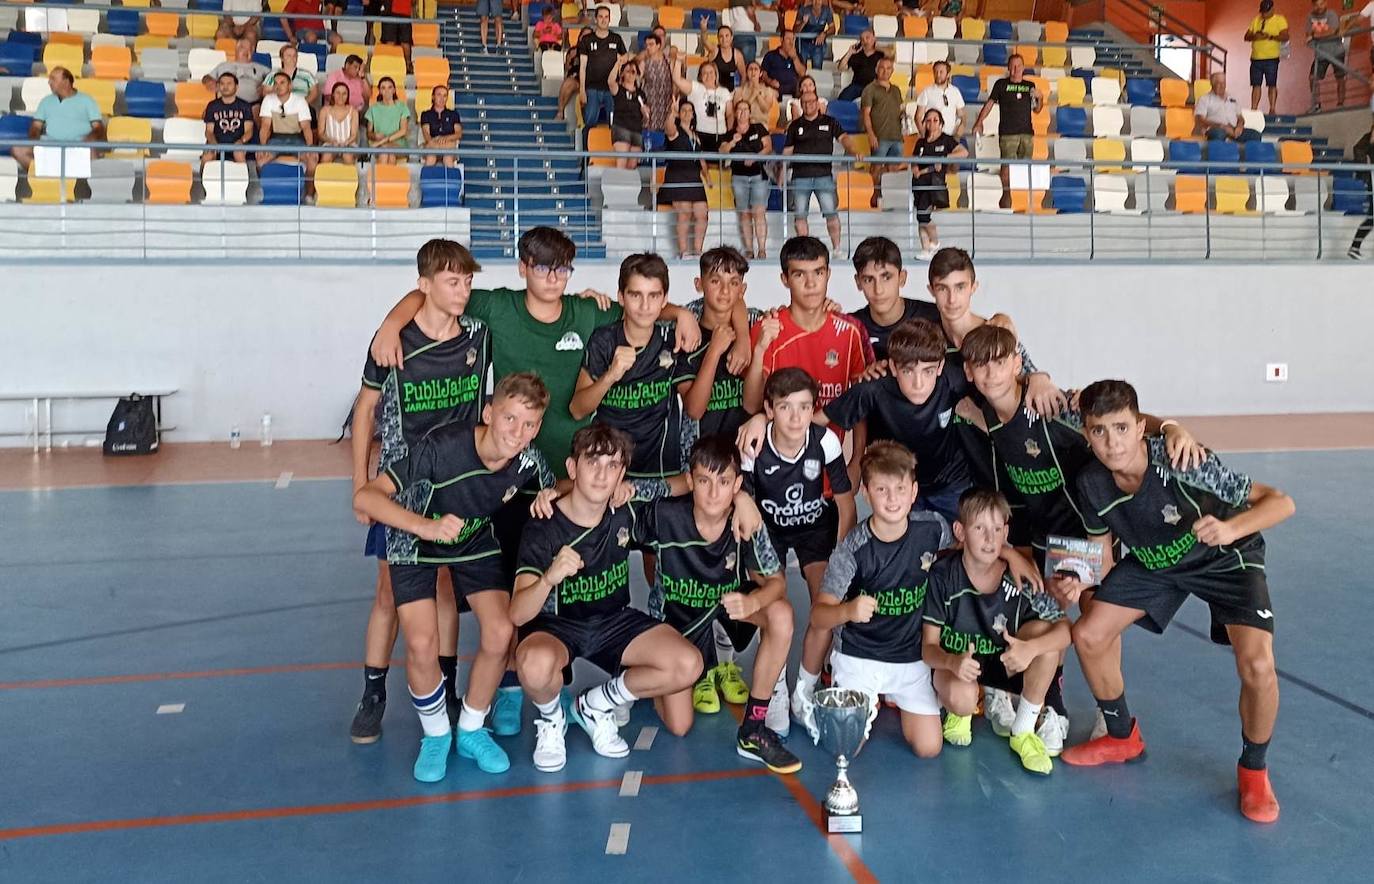 El Sporting Publijaime con el trofeo conquistado en Almaraz. 